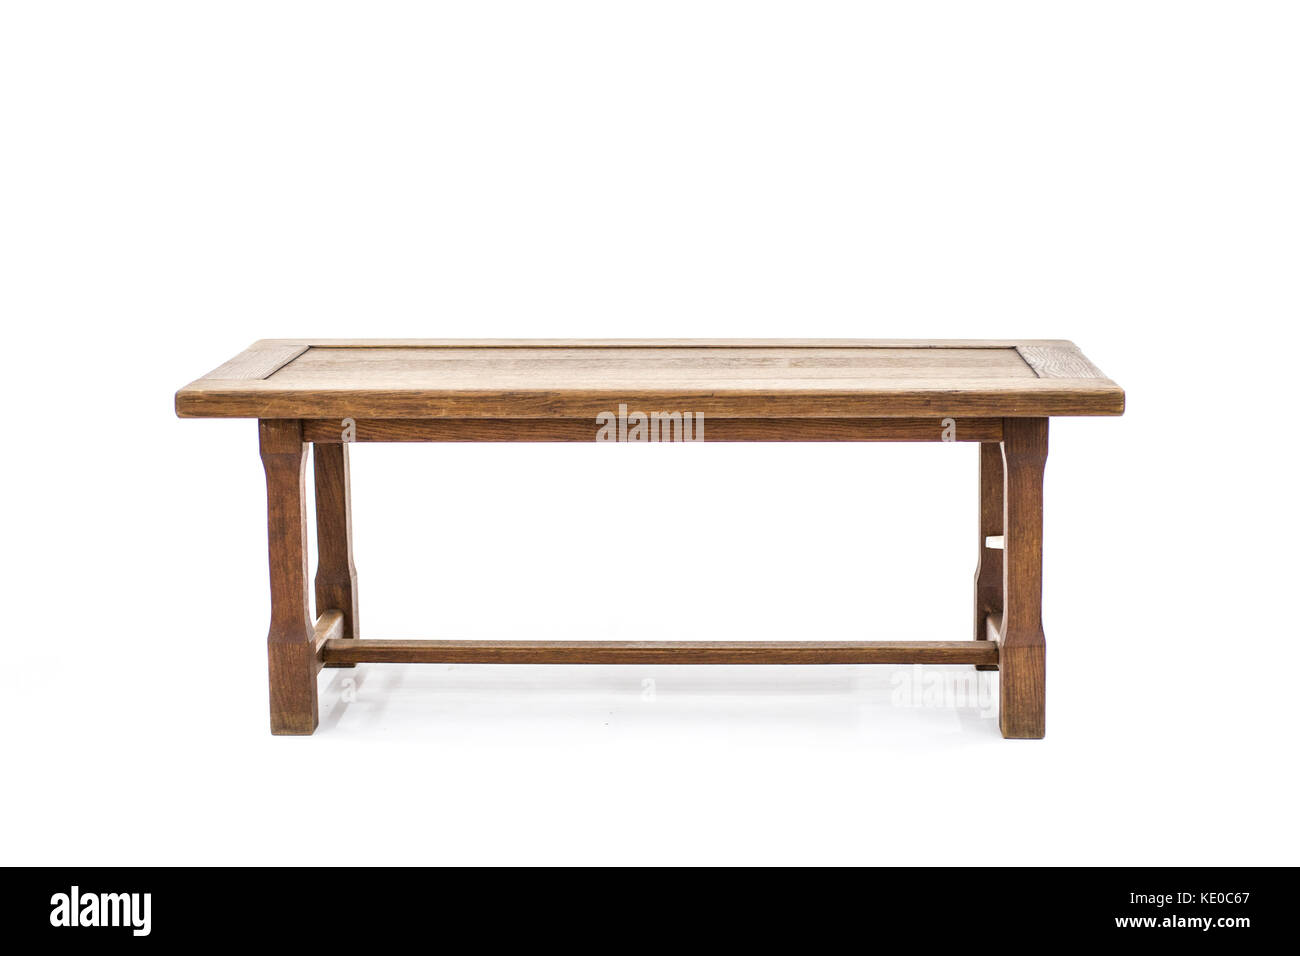 Table antique brun en bois isolé sur fond blanc. Banque D'Images